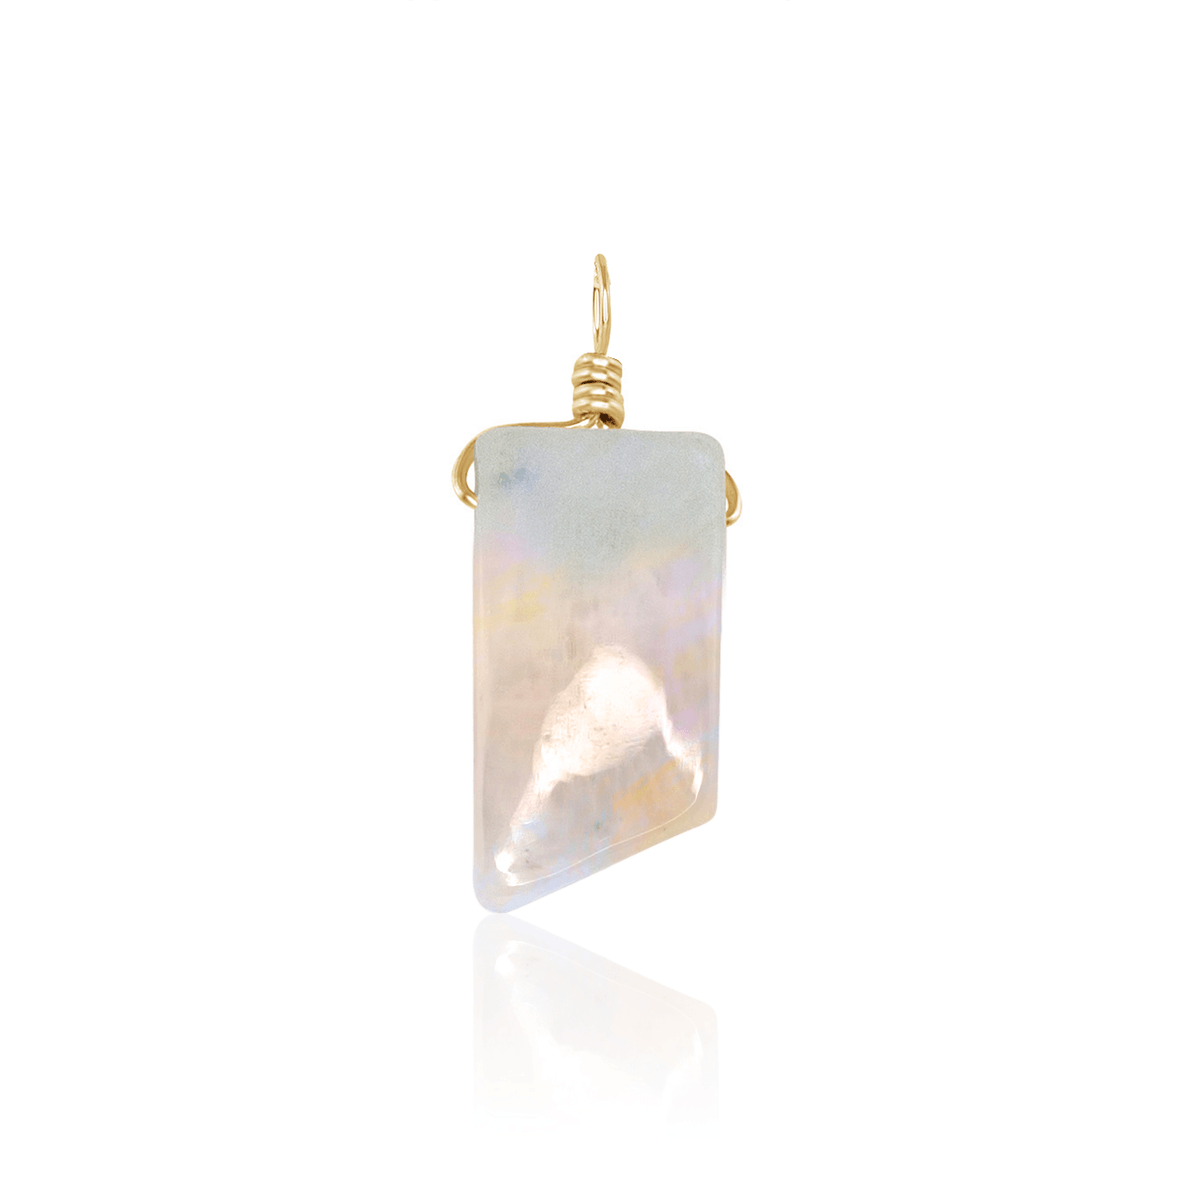 Small Smooth Rainbow Moonstone Crystal Pendant with Gentle Point - Small Smooth Rainbow Moonstone Crystal Pendant with Gentle Point - 14k Gold Fill - Luna Tide Handmade Crystal Jewellery